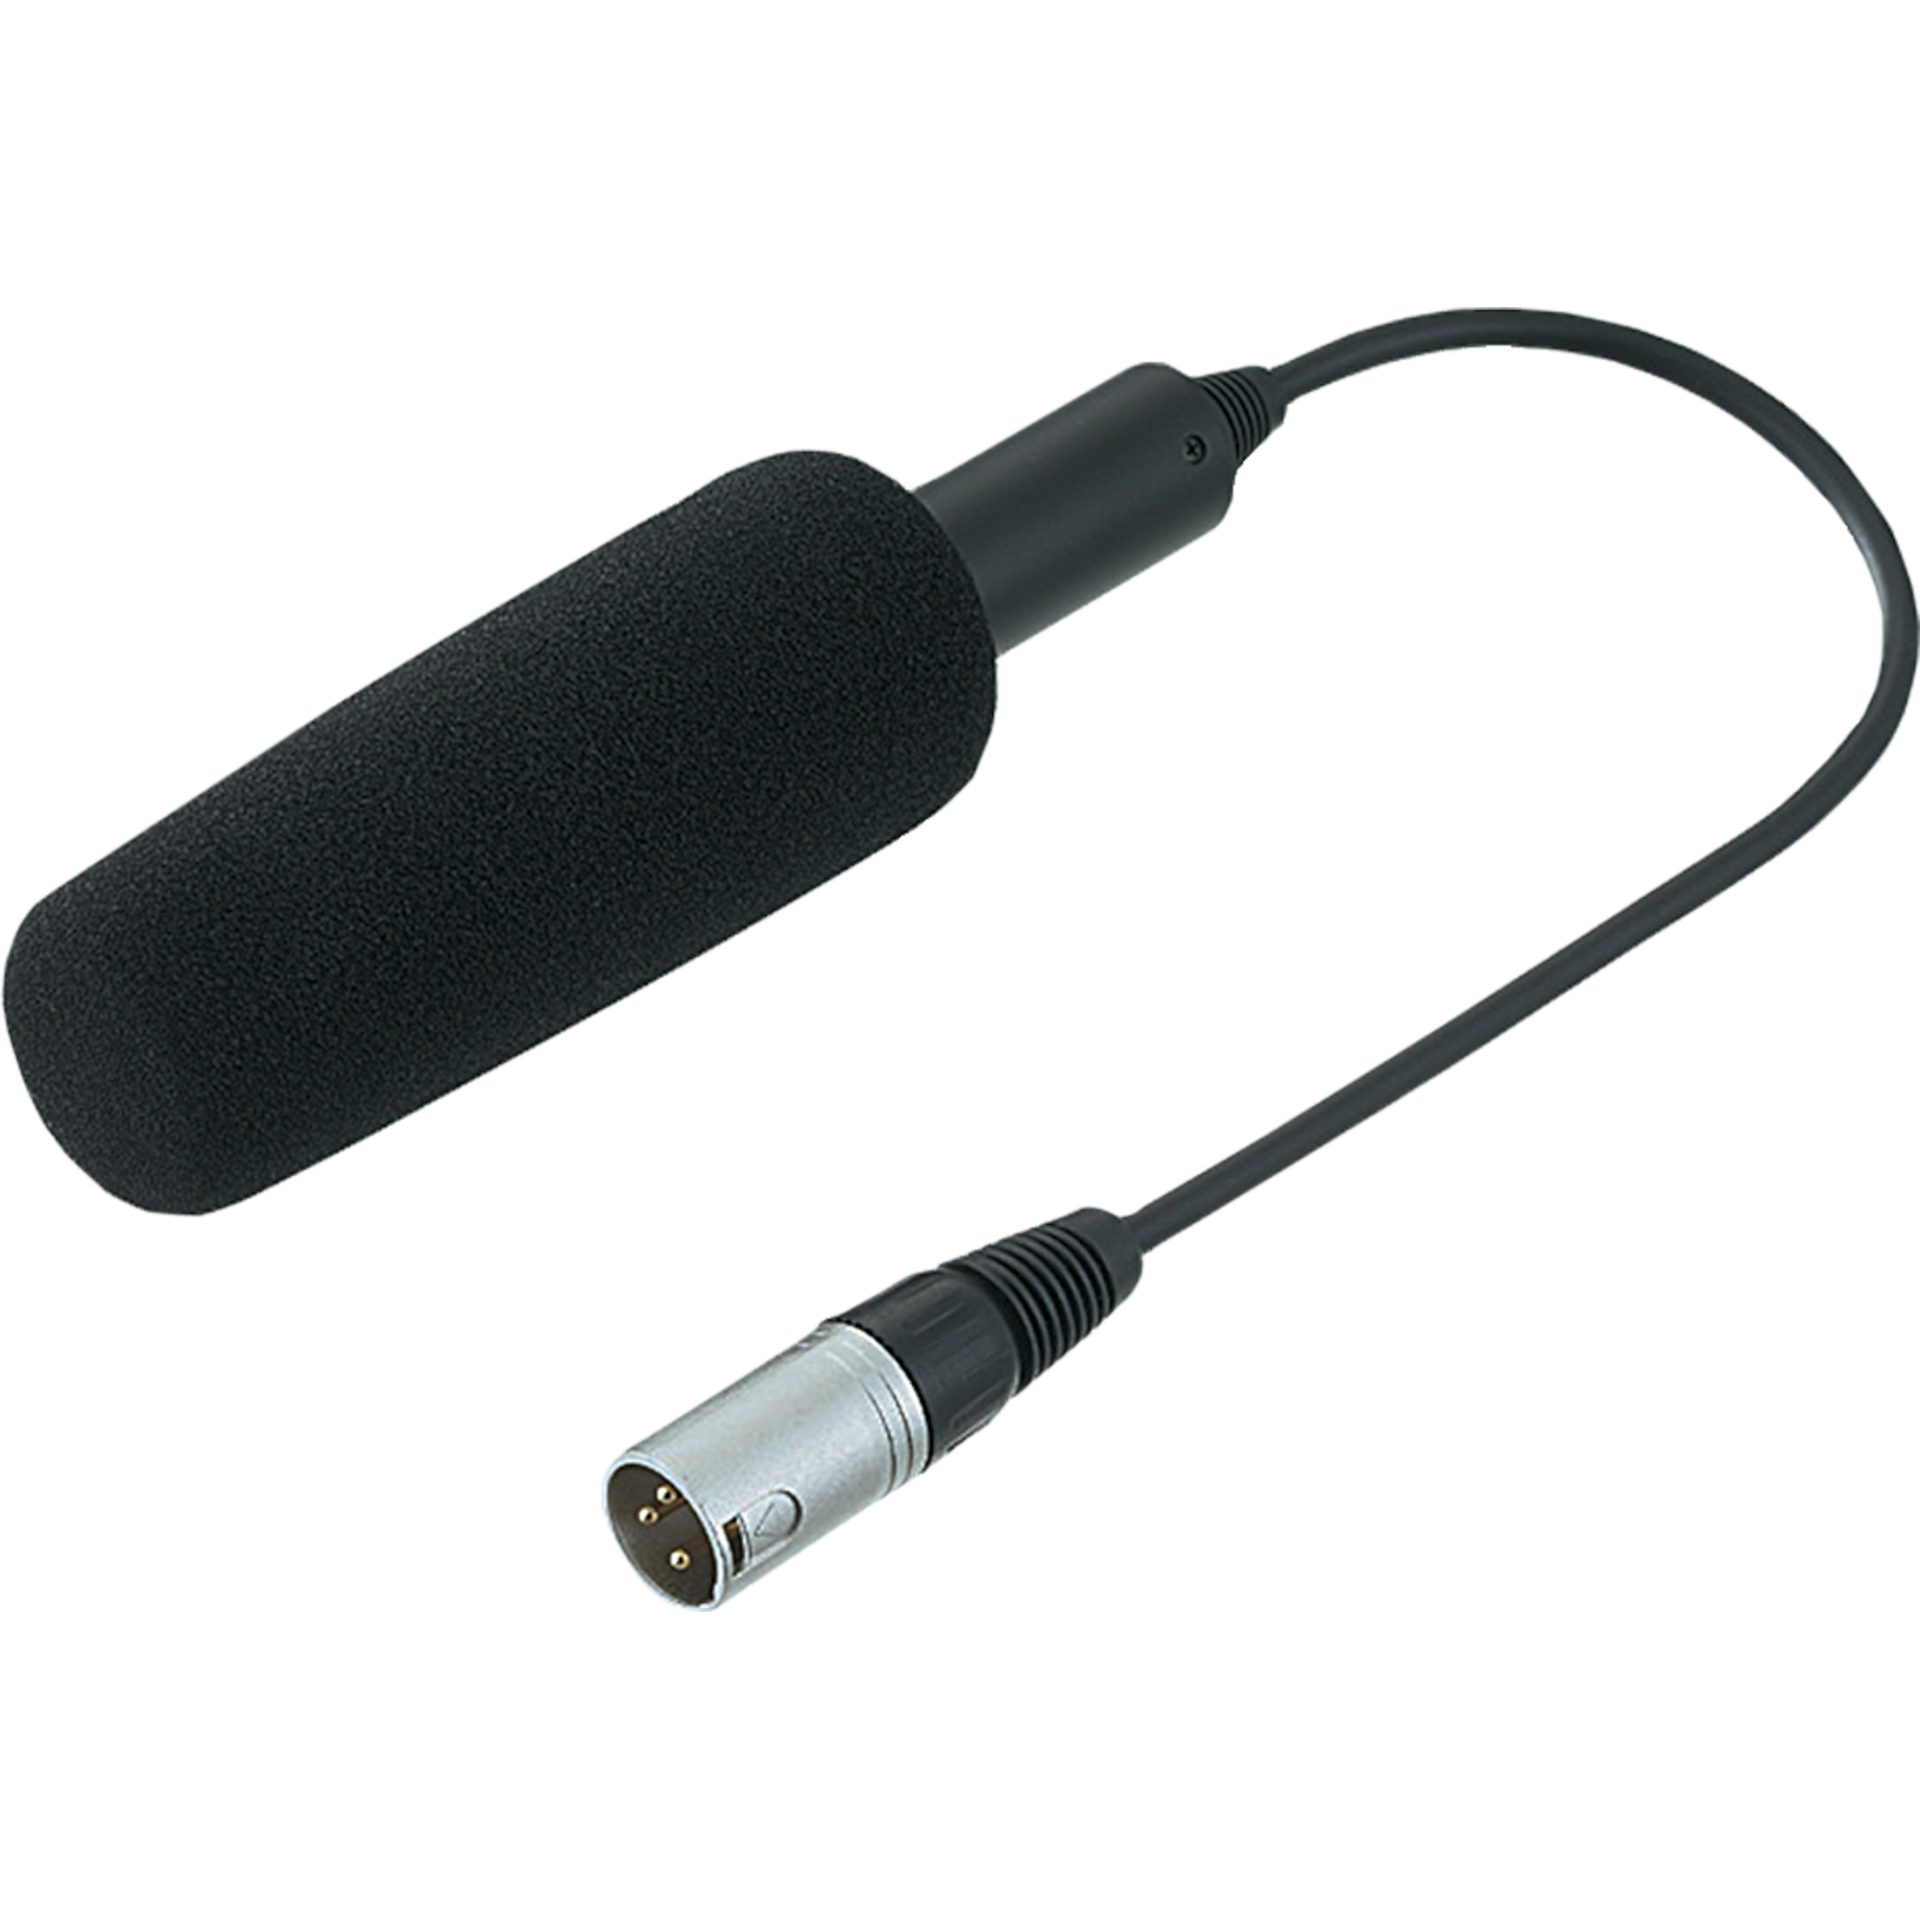 Panasonic AG-MC200 mikrofon pro videokamery (kardioidní směrovost, XLR konektor), černá